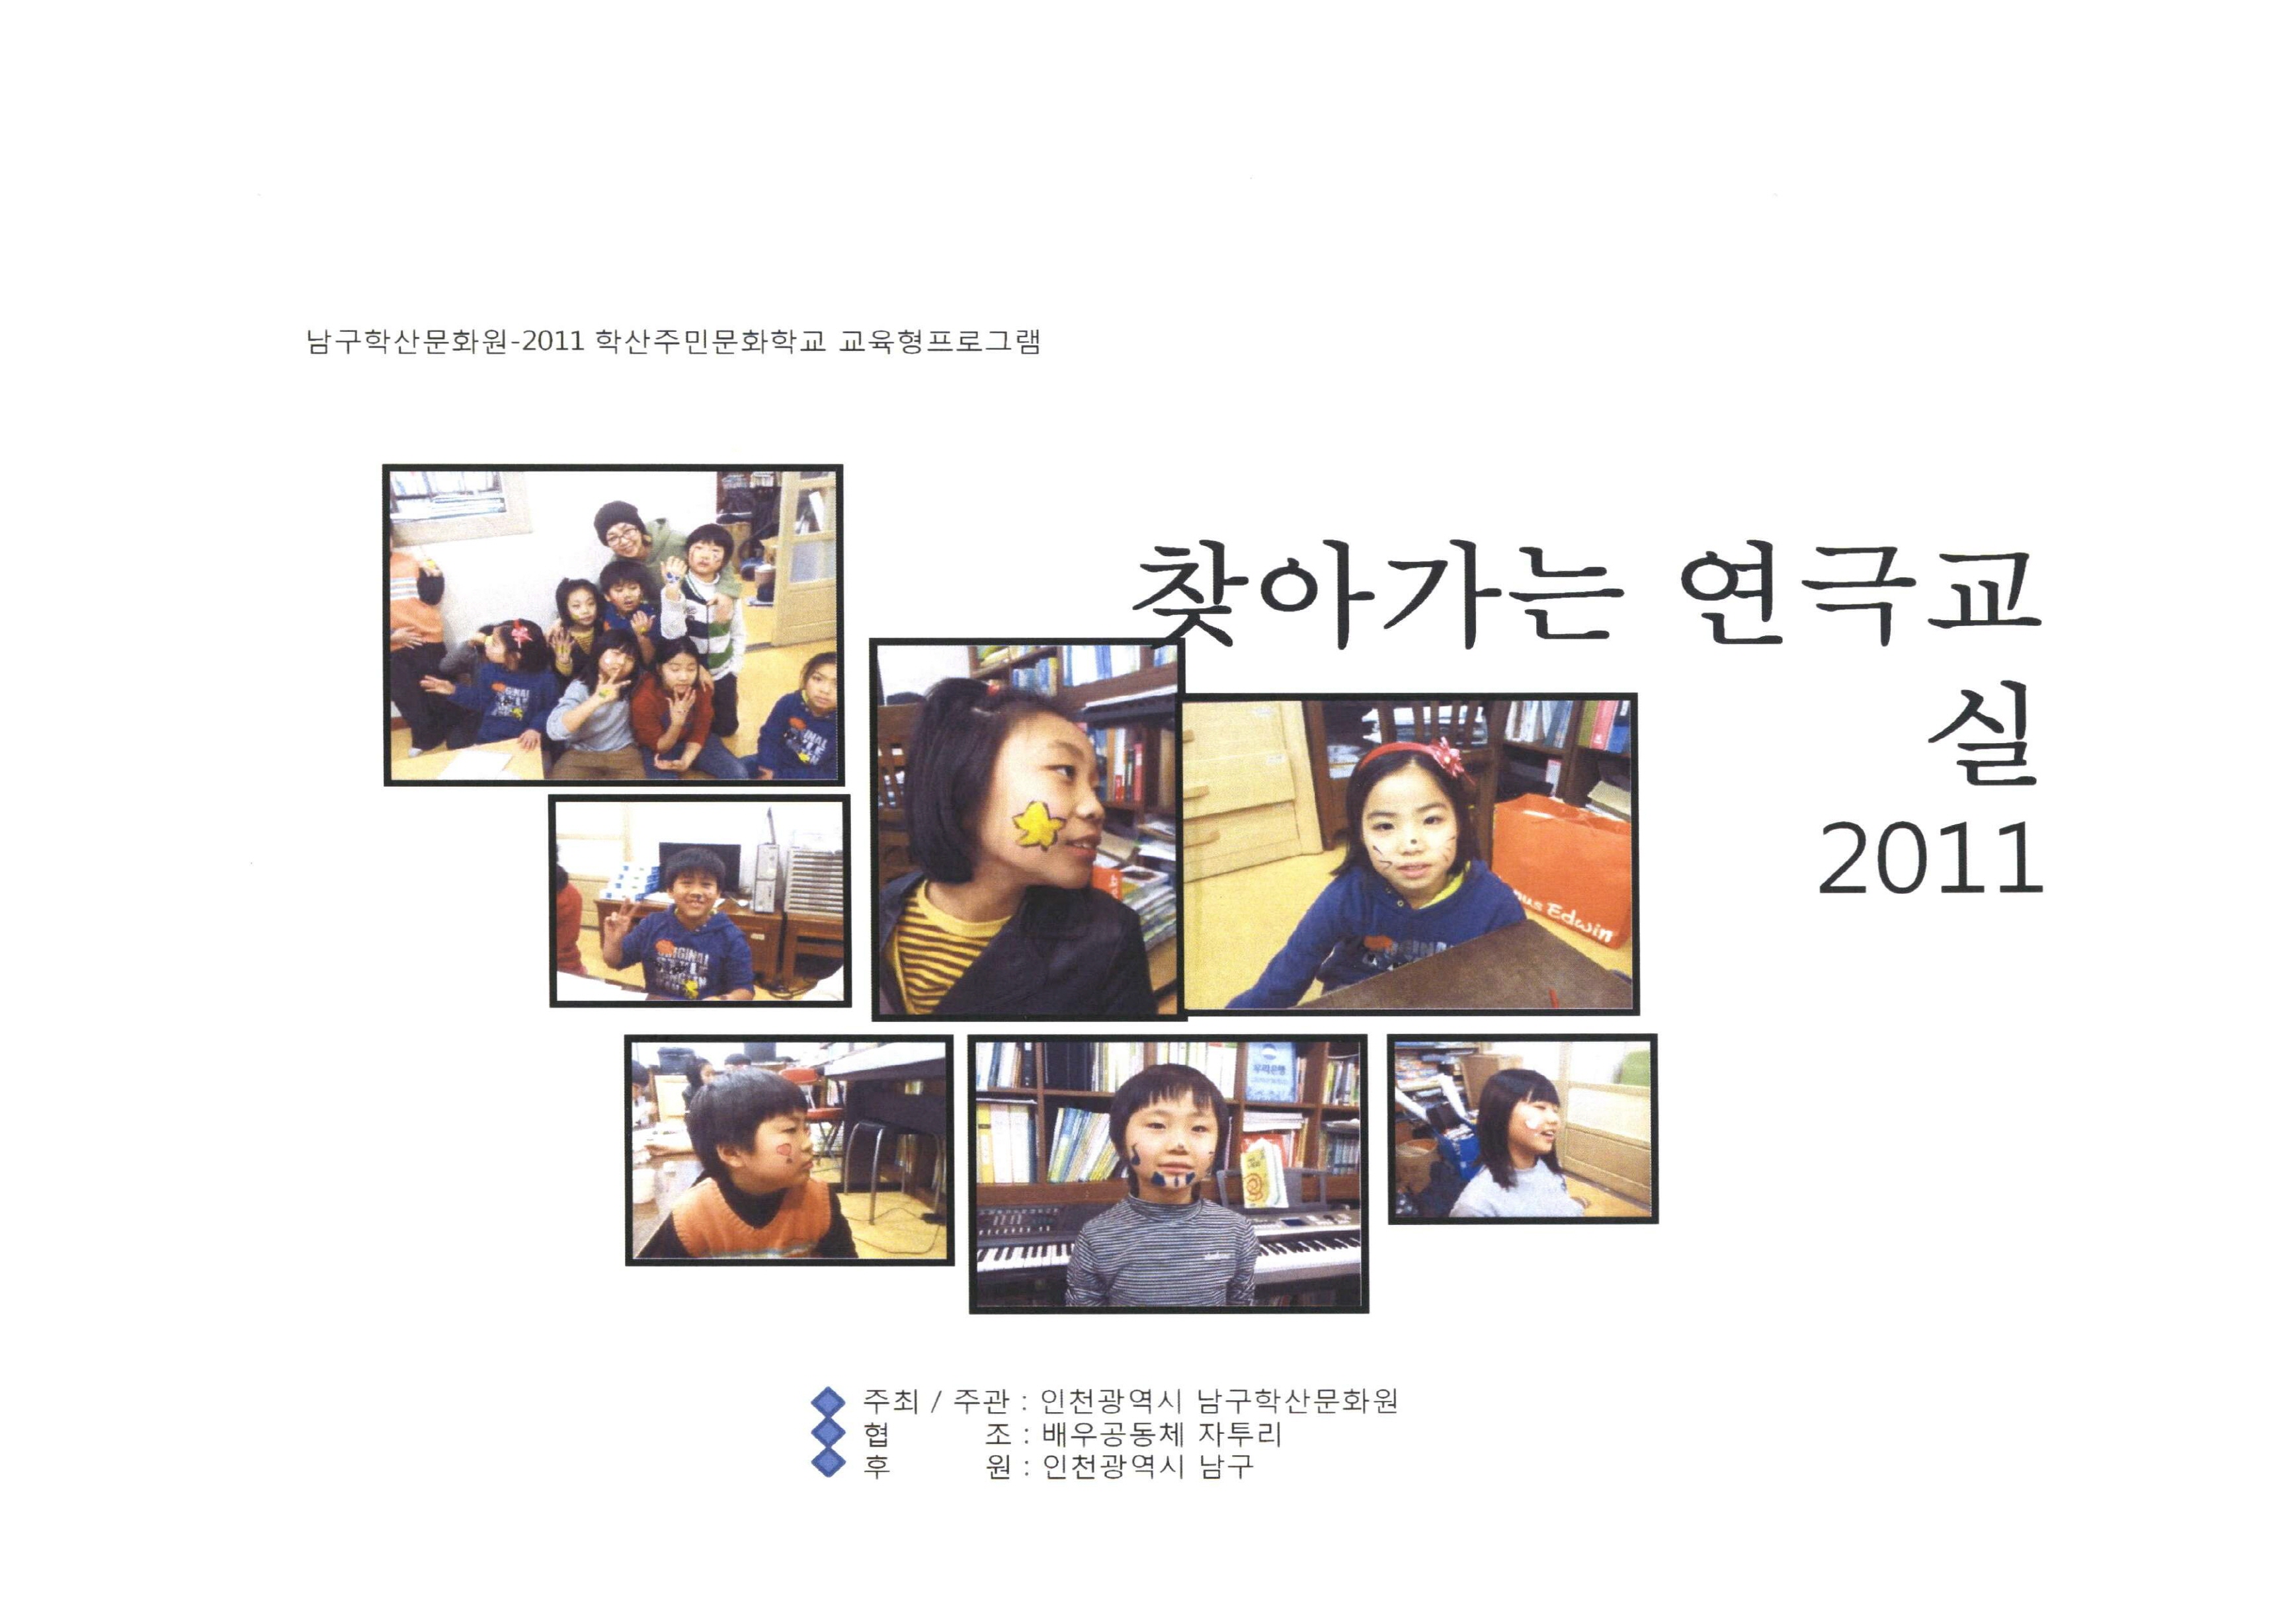 남구학산문화원-2011 학산주민문화학교 교육형프로그램 찾아가는 연극교실 2011